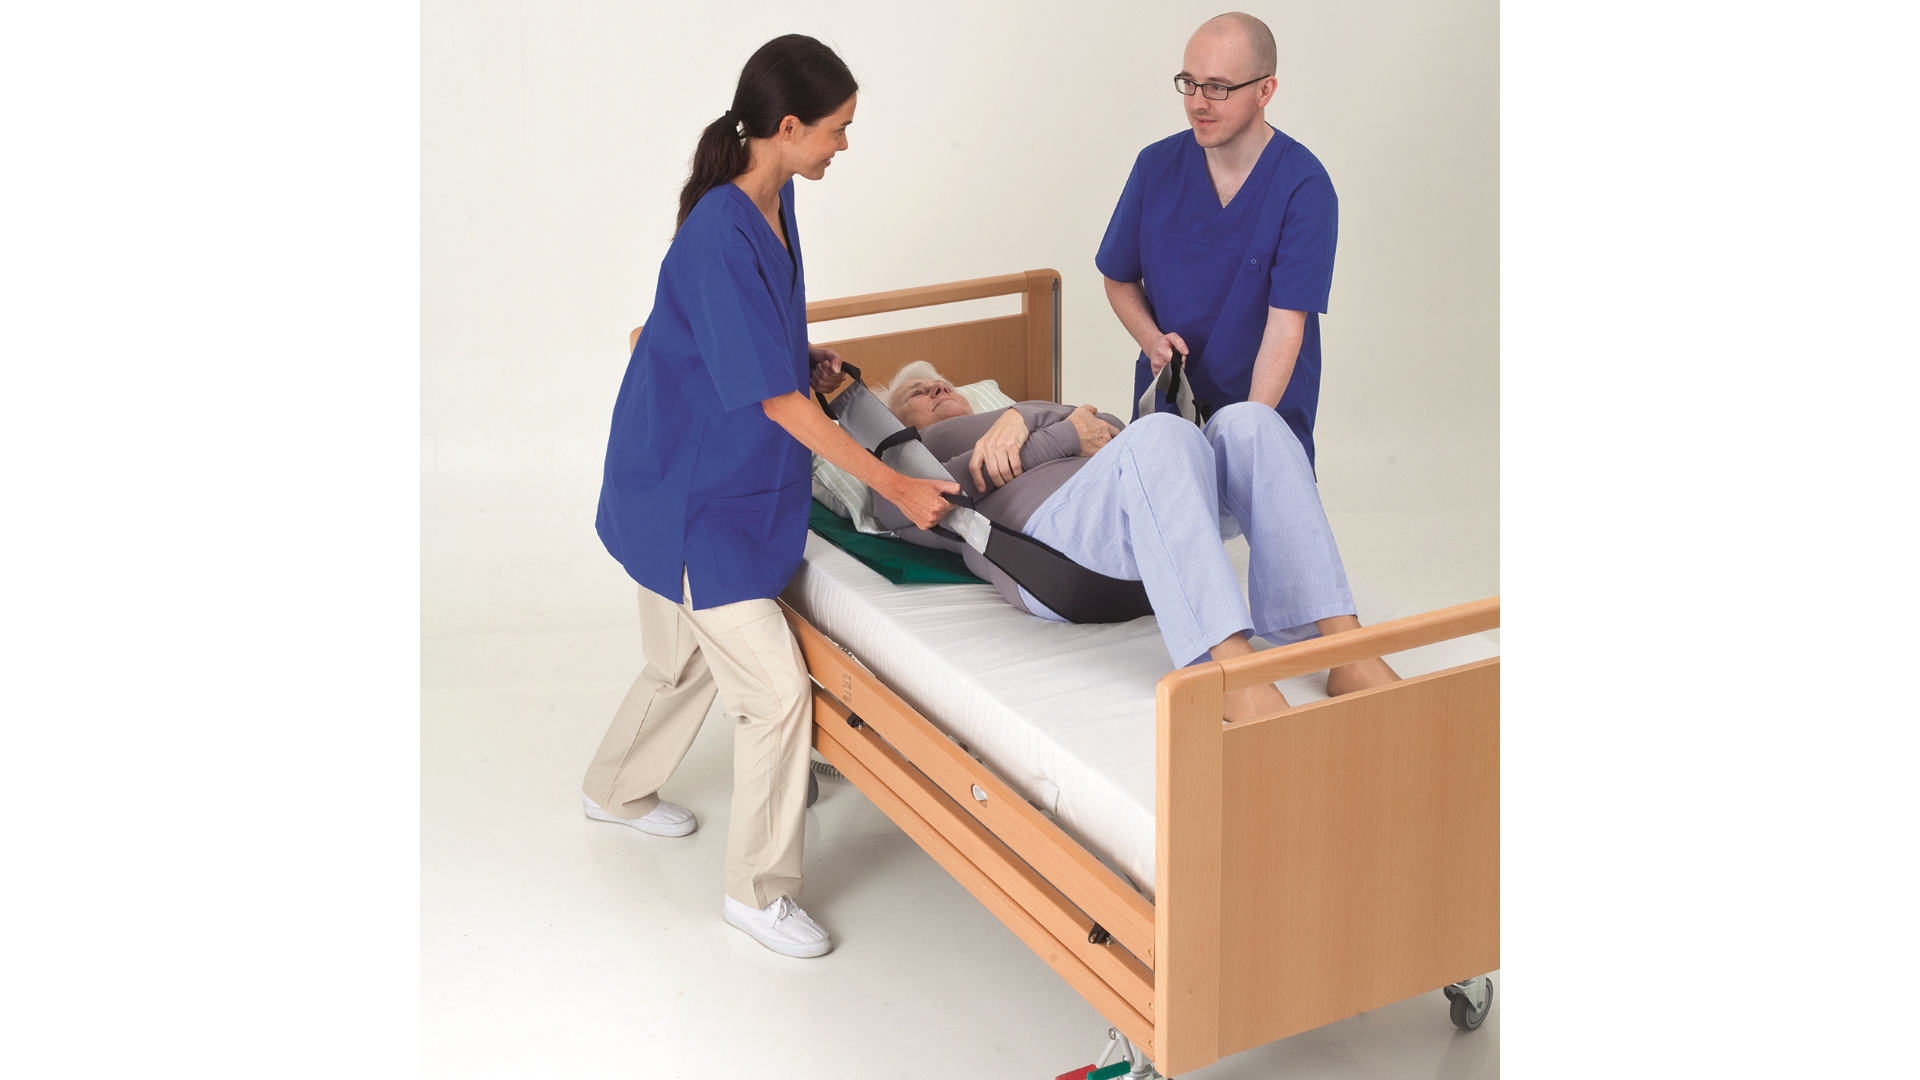 2 Pflegekräfte, männlich und weiblich, stehen auf je einer Bettseite und lagern einen Patienten mit einem Gurt um, der seitliche Griffe hat. 